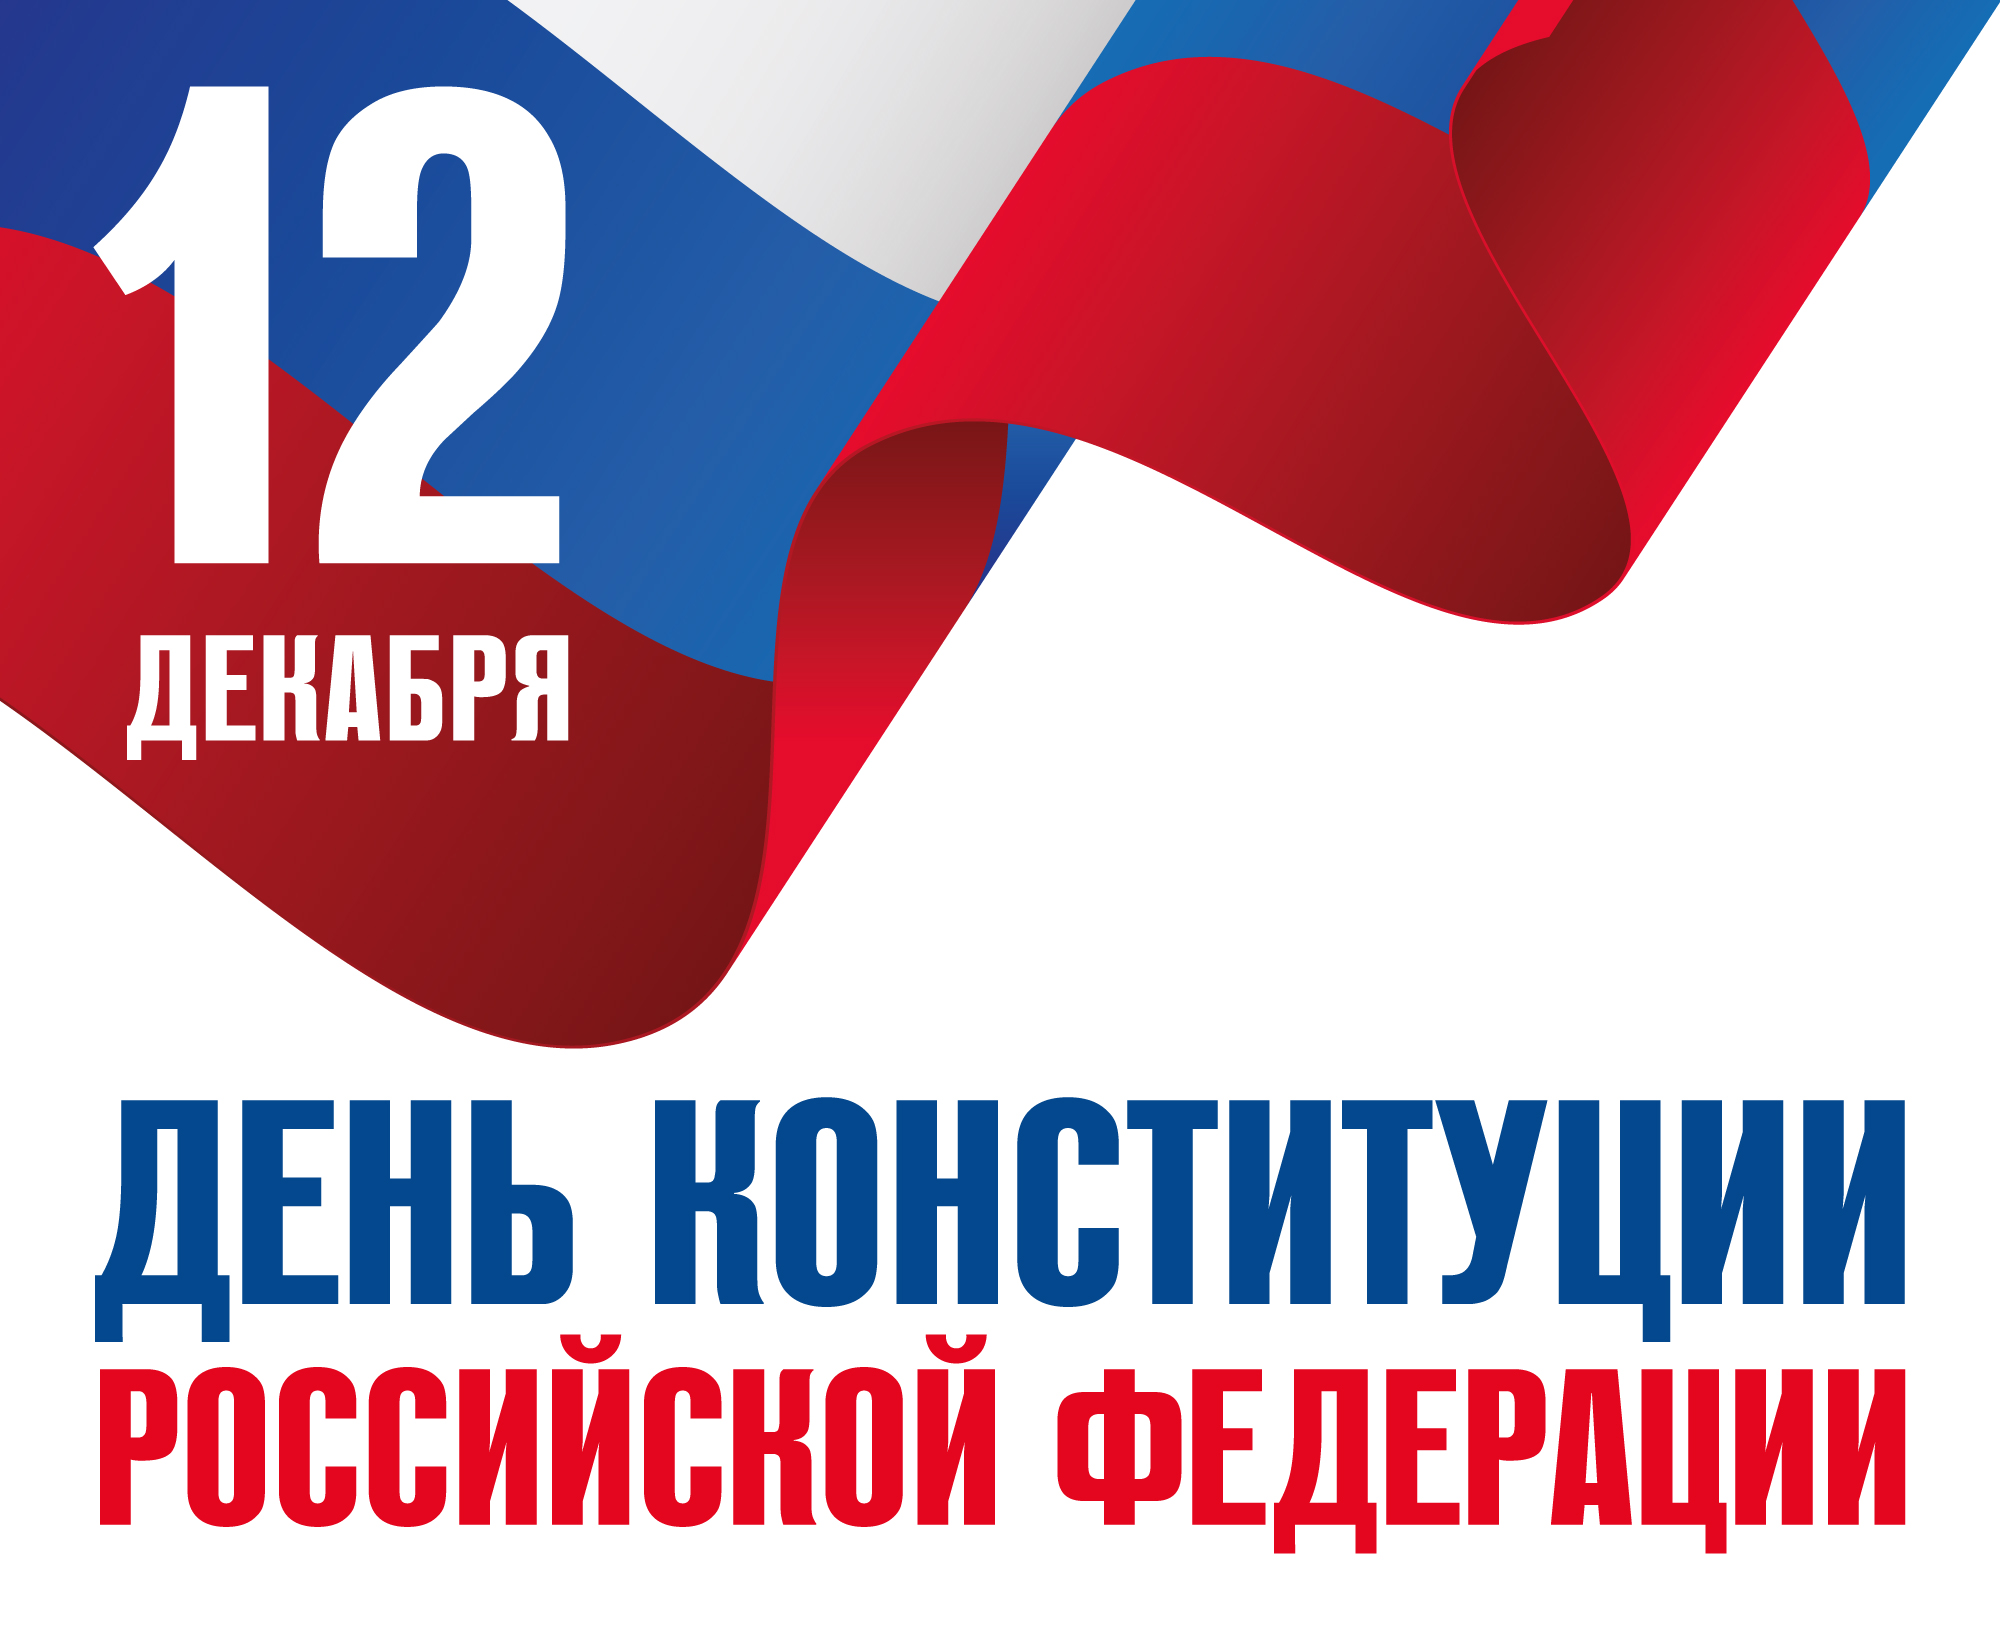 день конституции российской федерации